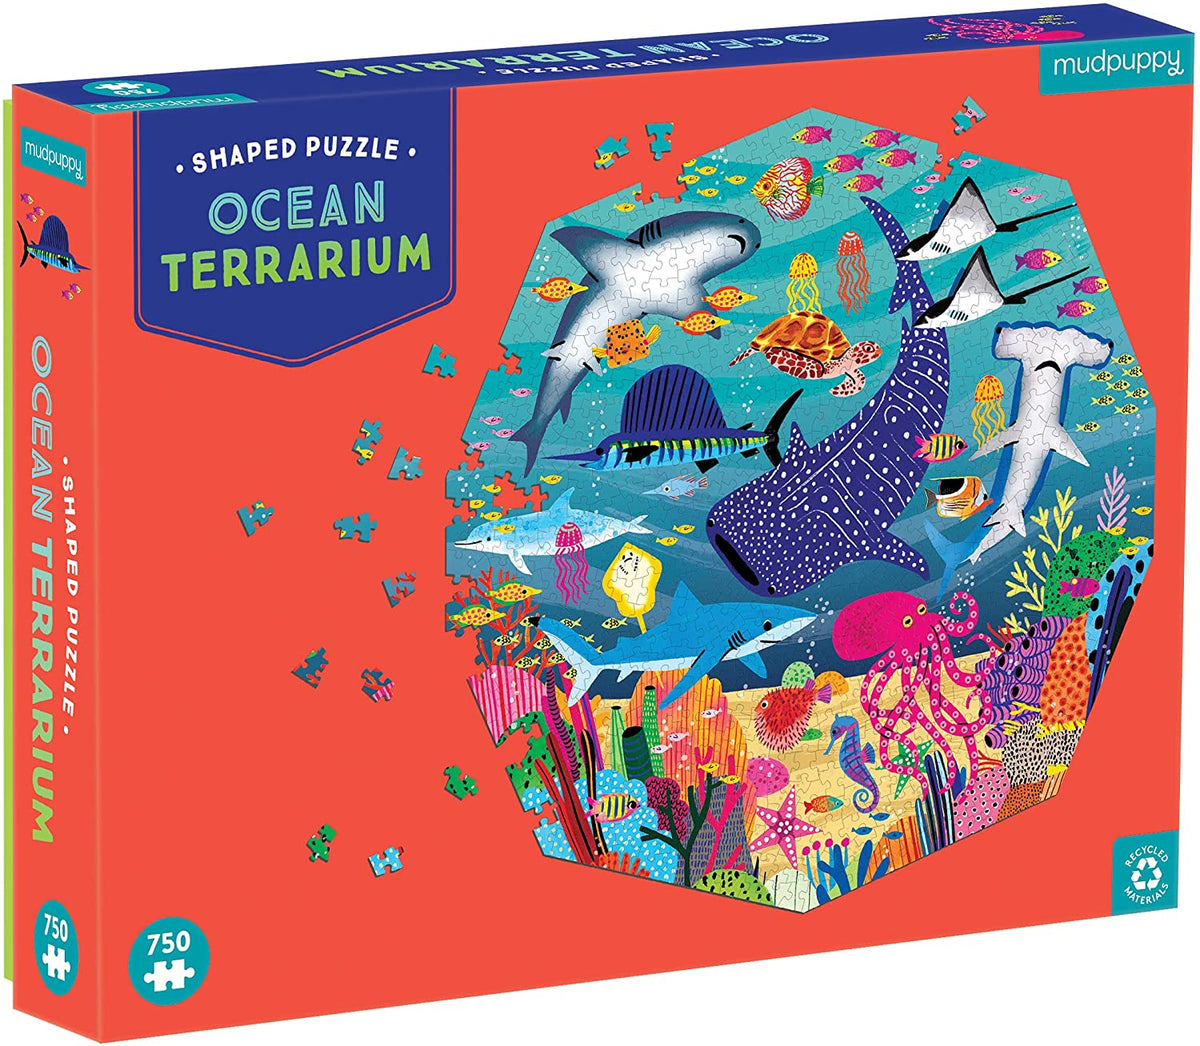 Ocean Terrarium Shaped Puzzle Cover